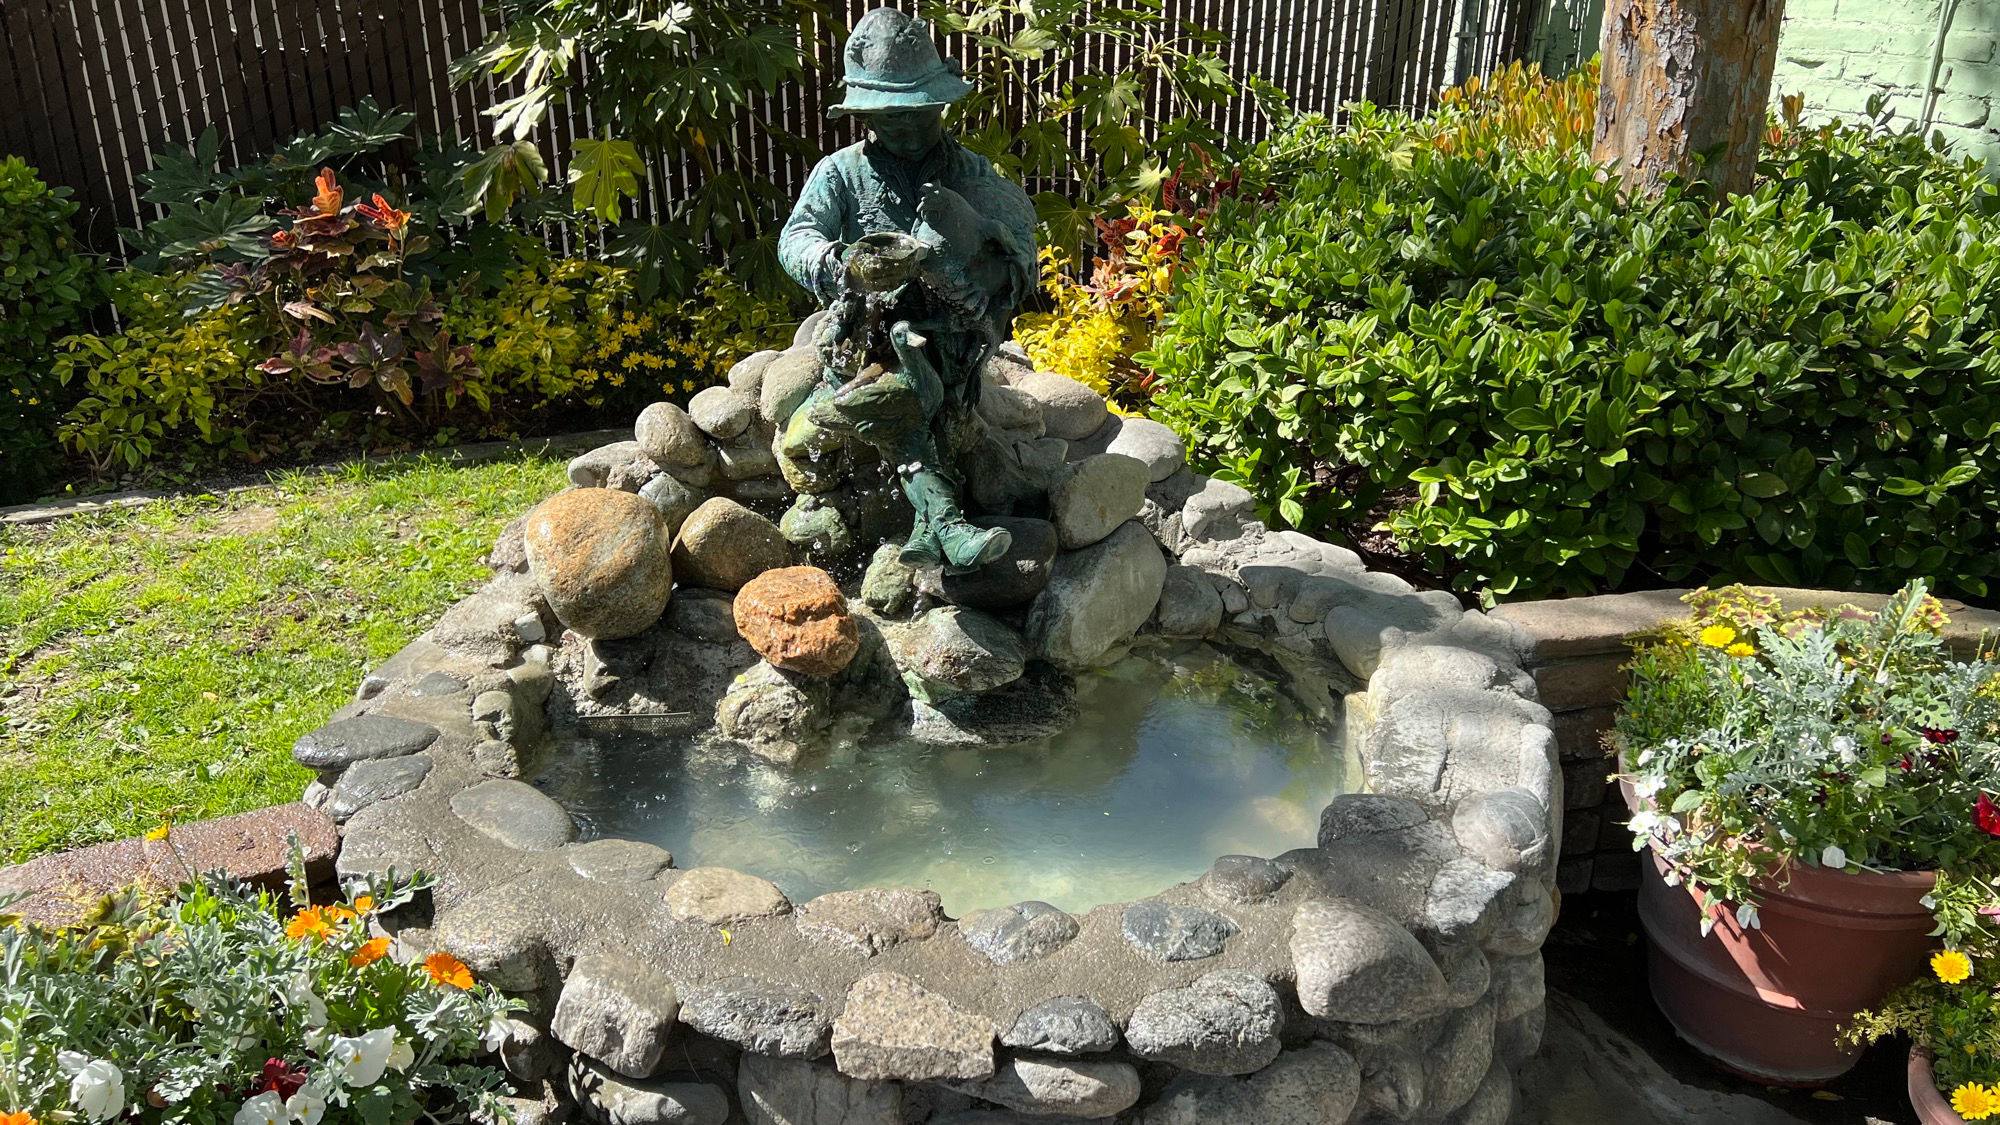 The Emporium Fountain